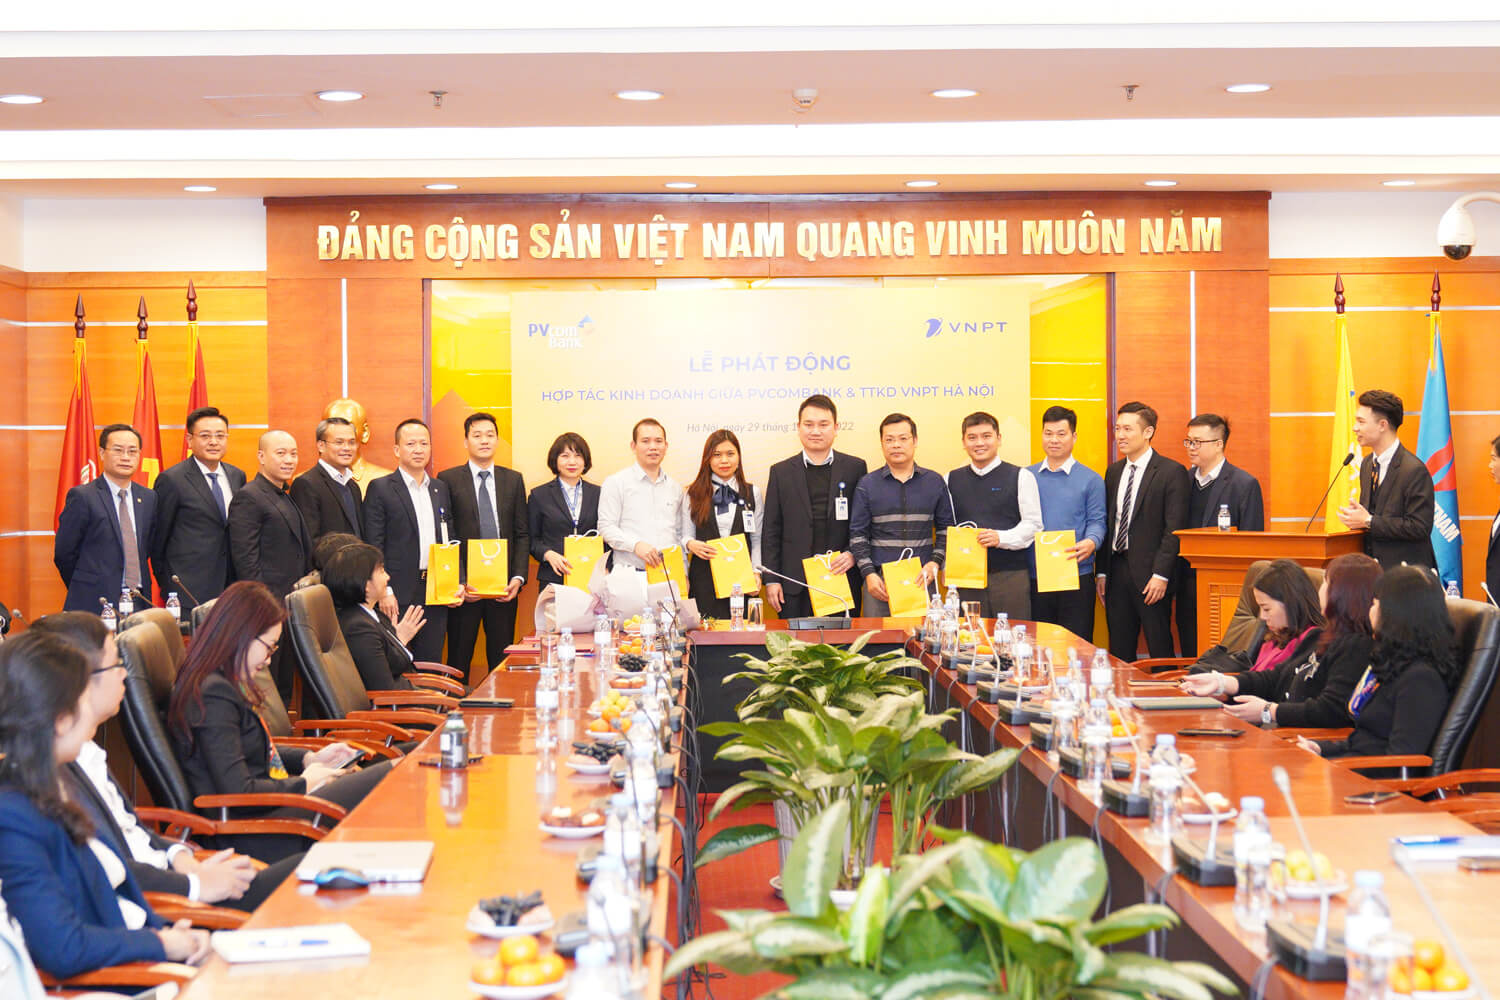 Chương trình hợp tác giữa PVcomBank và Trung tâm kinh doanh VNPT Hà Nội sẽ mở ra cơ hội phát triển cho cả hai đơn vị